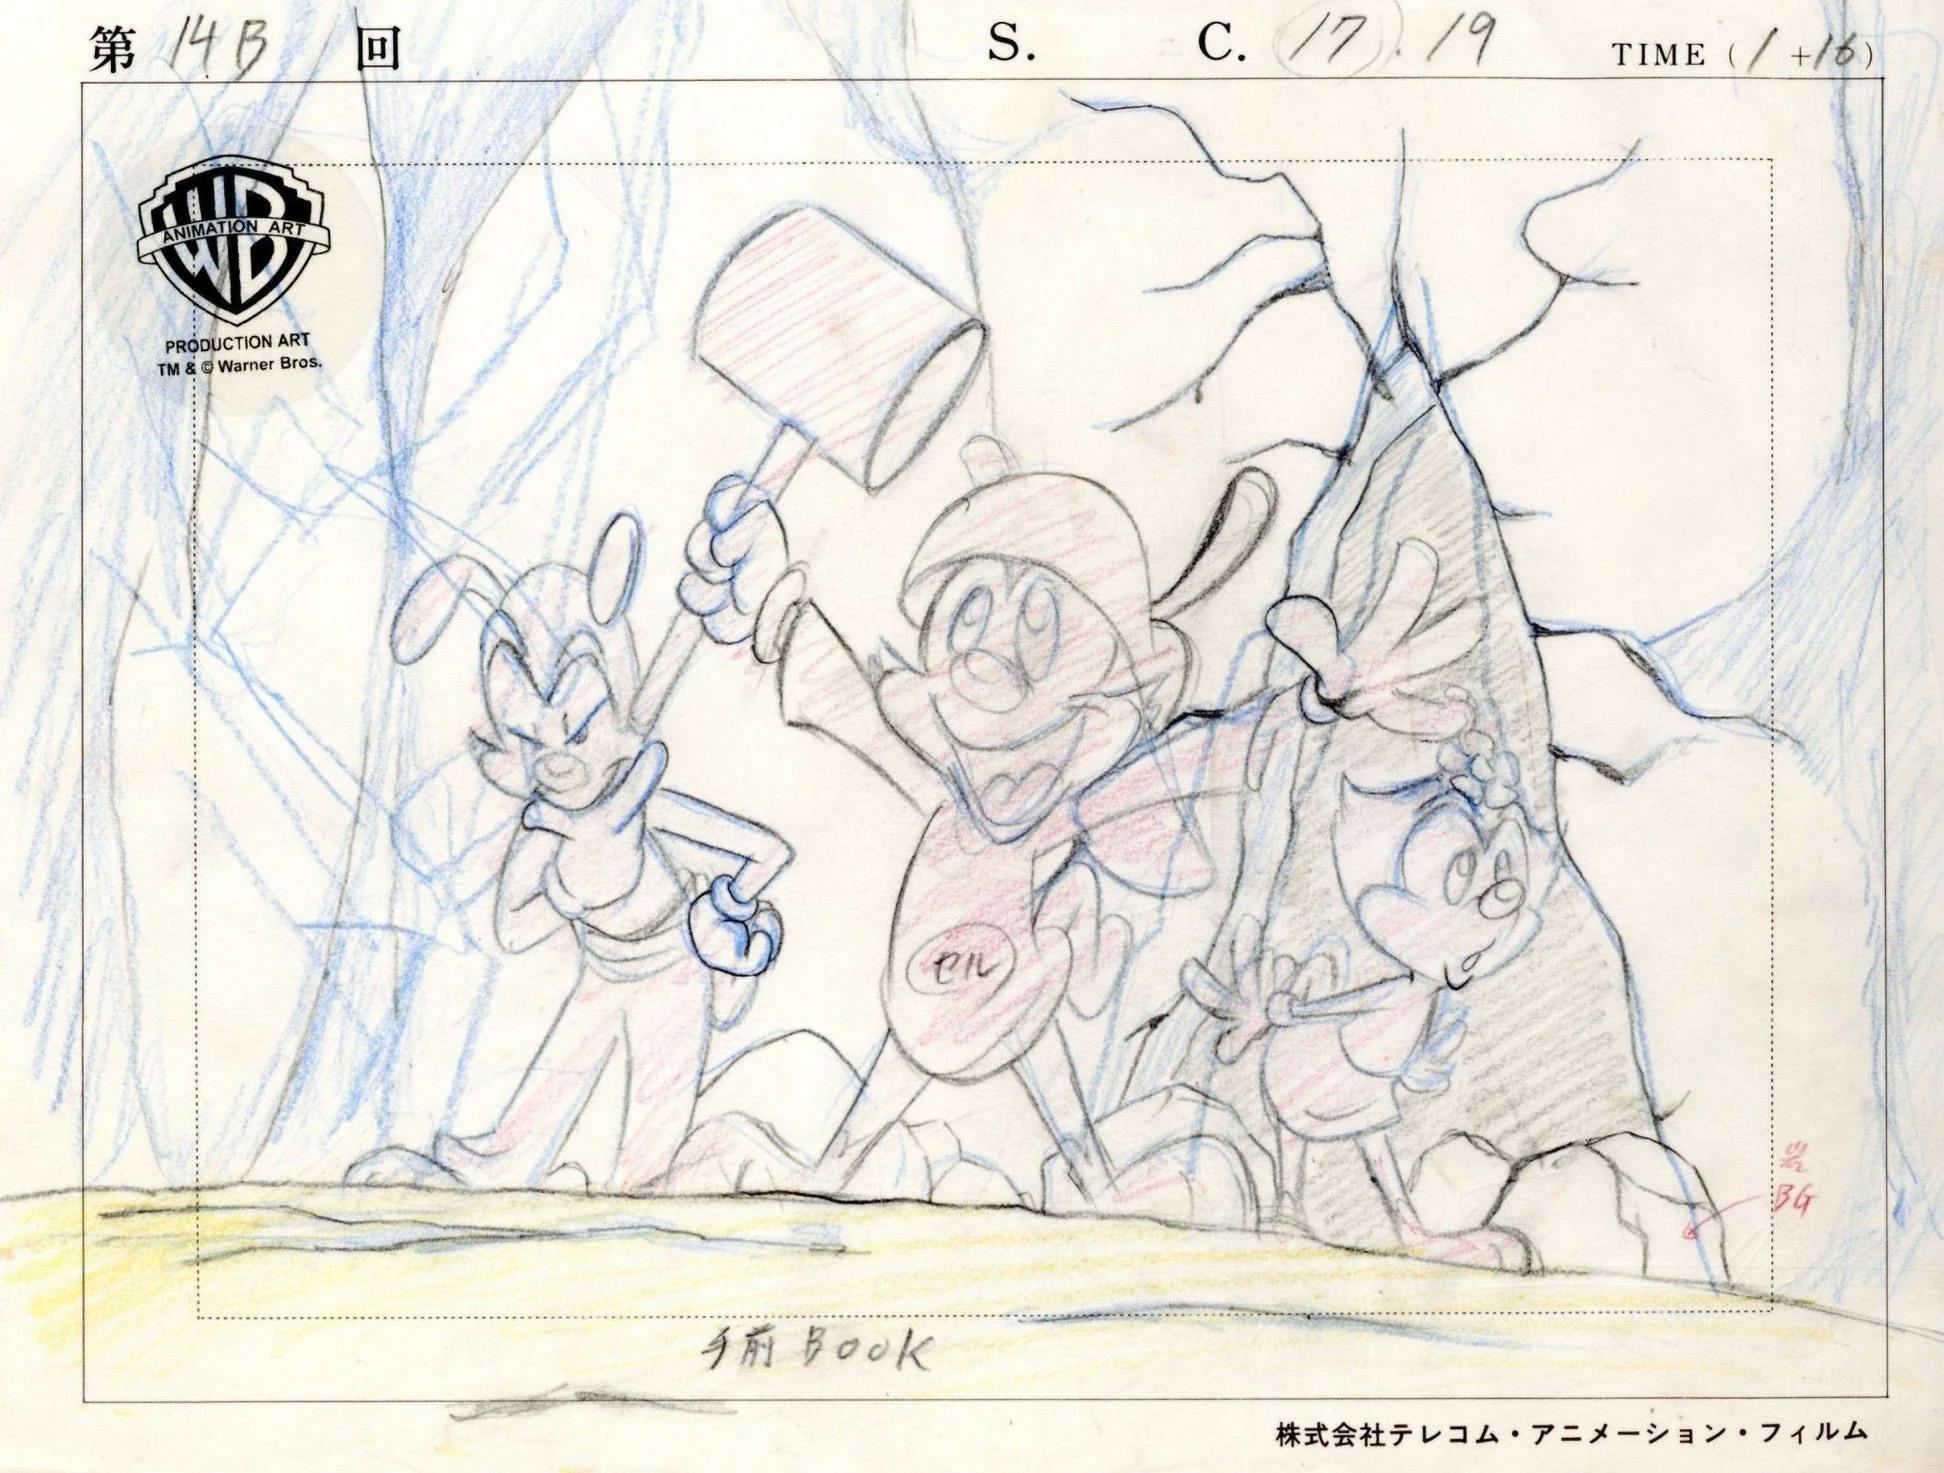 Animaniacs Dibujo original de producción: Yakko, Wakko y Dot - Art de Warner Bros. Studio Artists